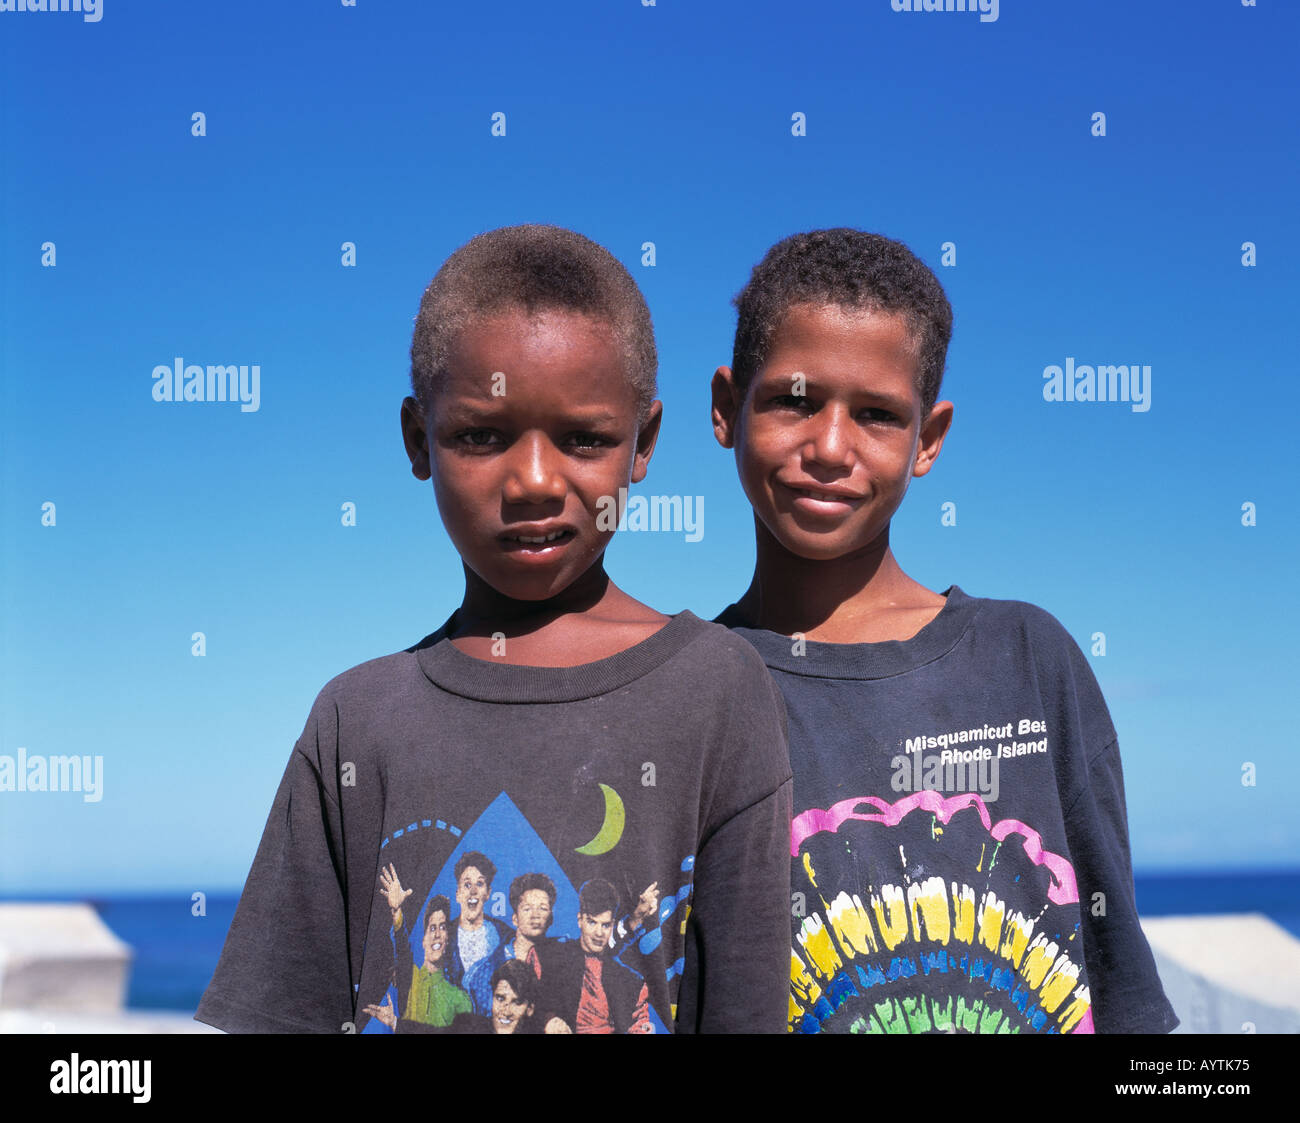 Deux garçons en t-shirts, des jeunes, des sang-mêlé, mulâtres, portrait, République dominicaine, mer des Caraïbes Banque D'Images